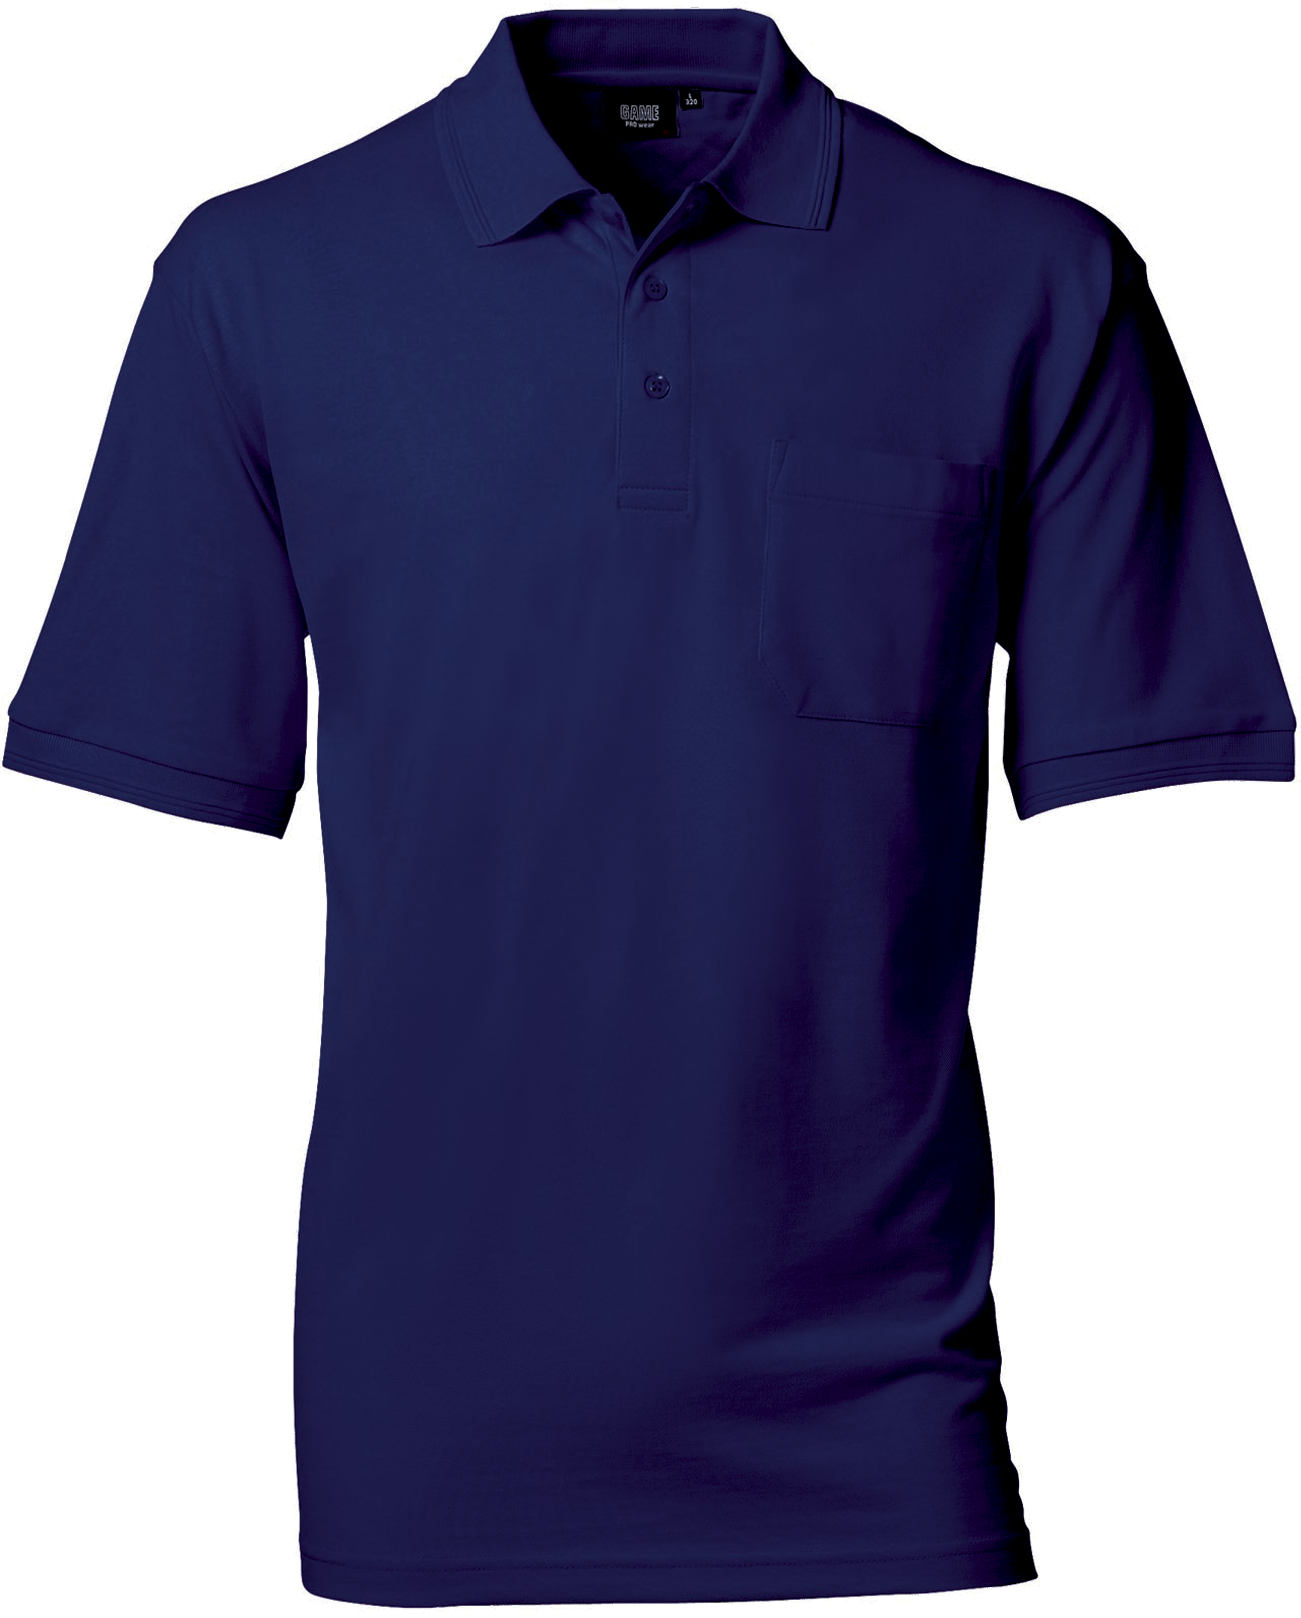 Marine Herren Polo Shirt m. Brusttasche, Prowear (8250281)